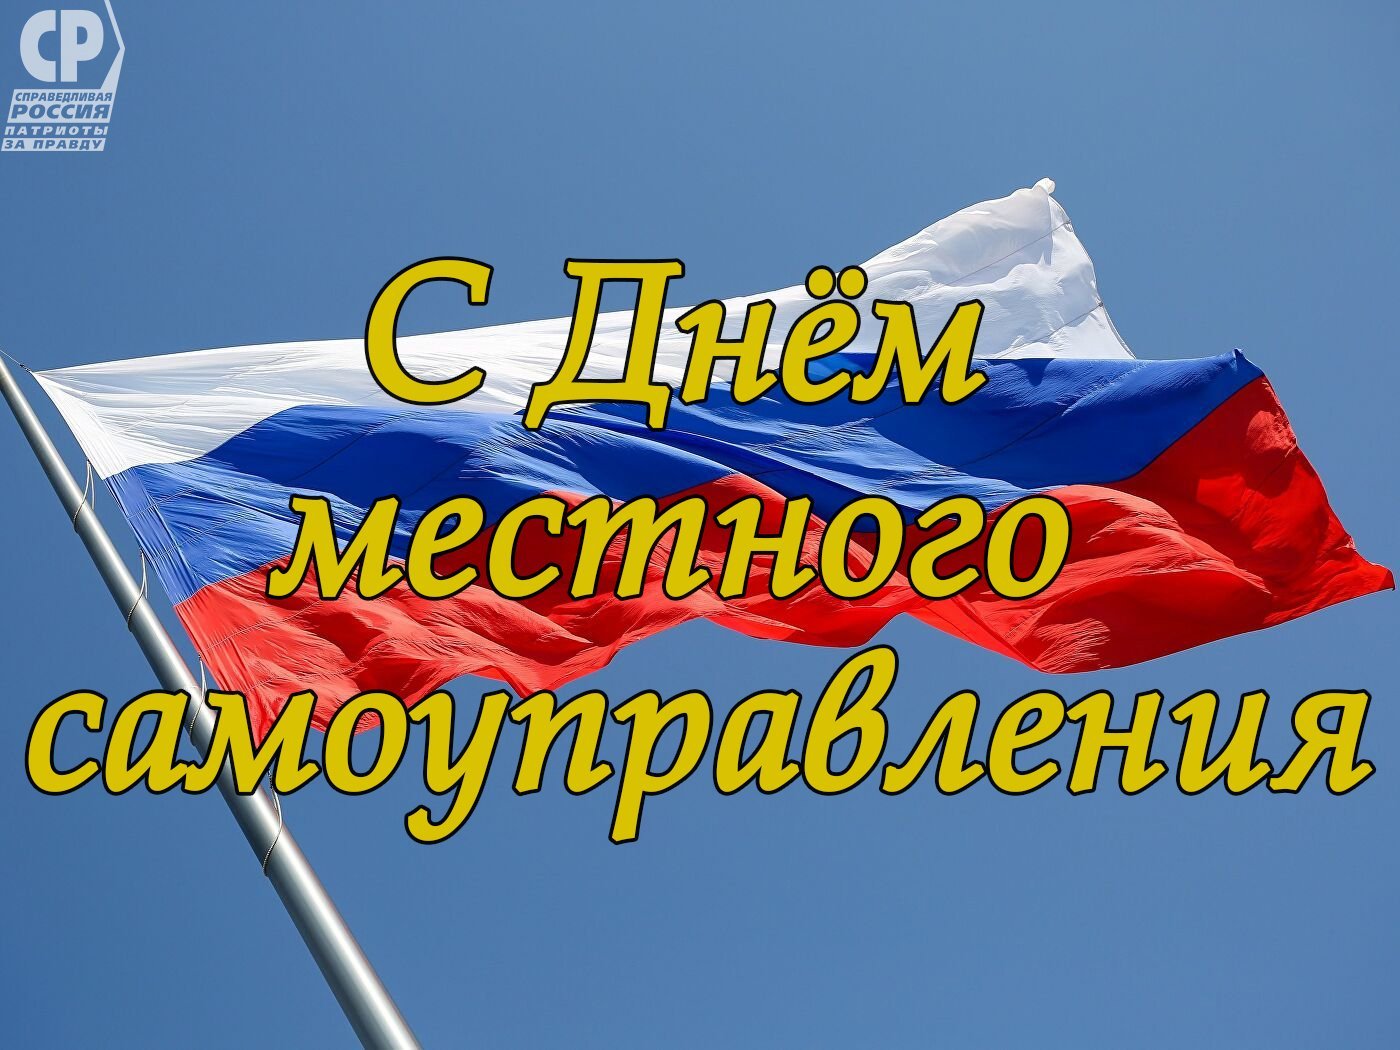 День местного самоуправления в россии 21 апреля